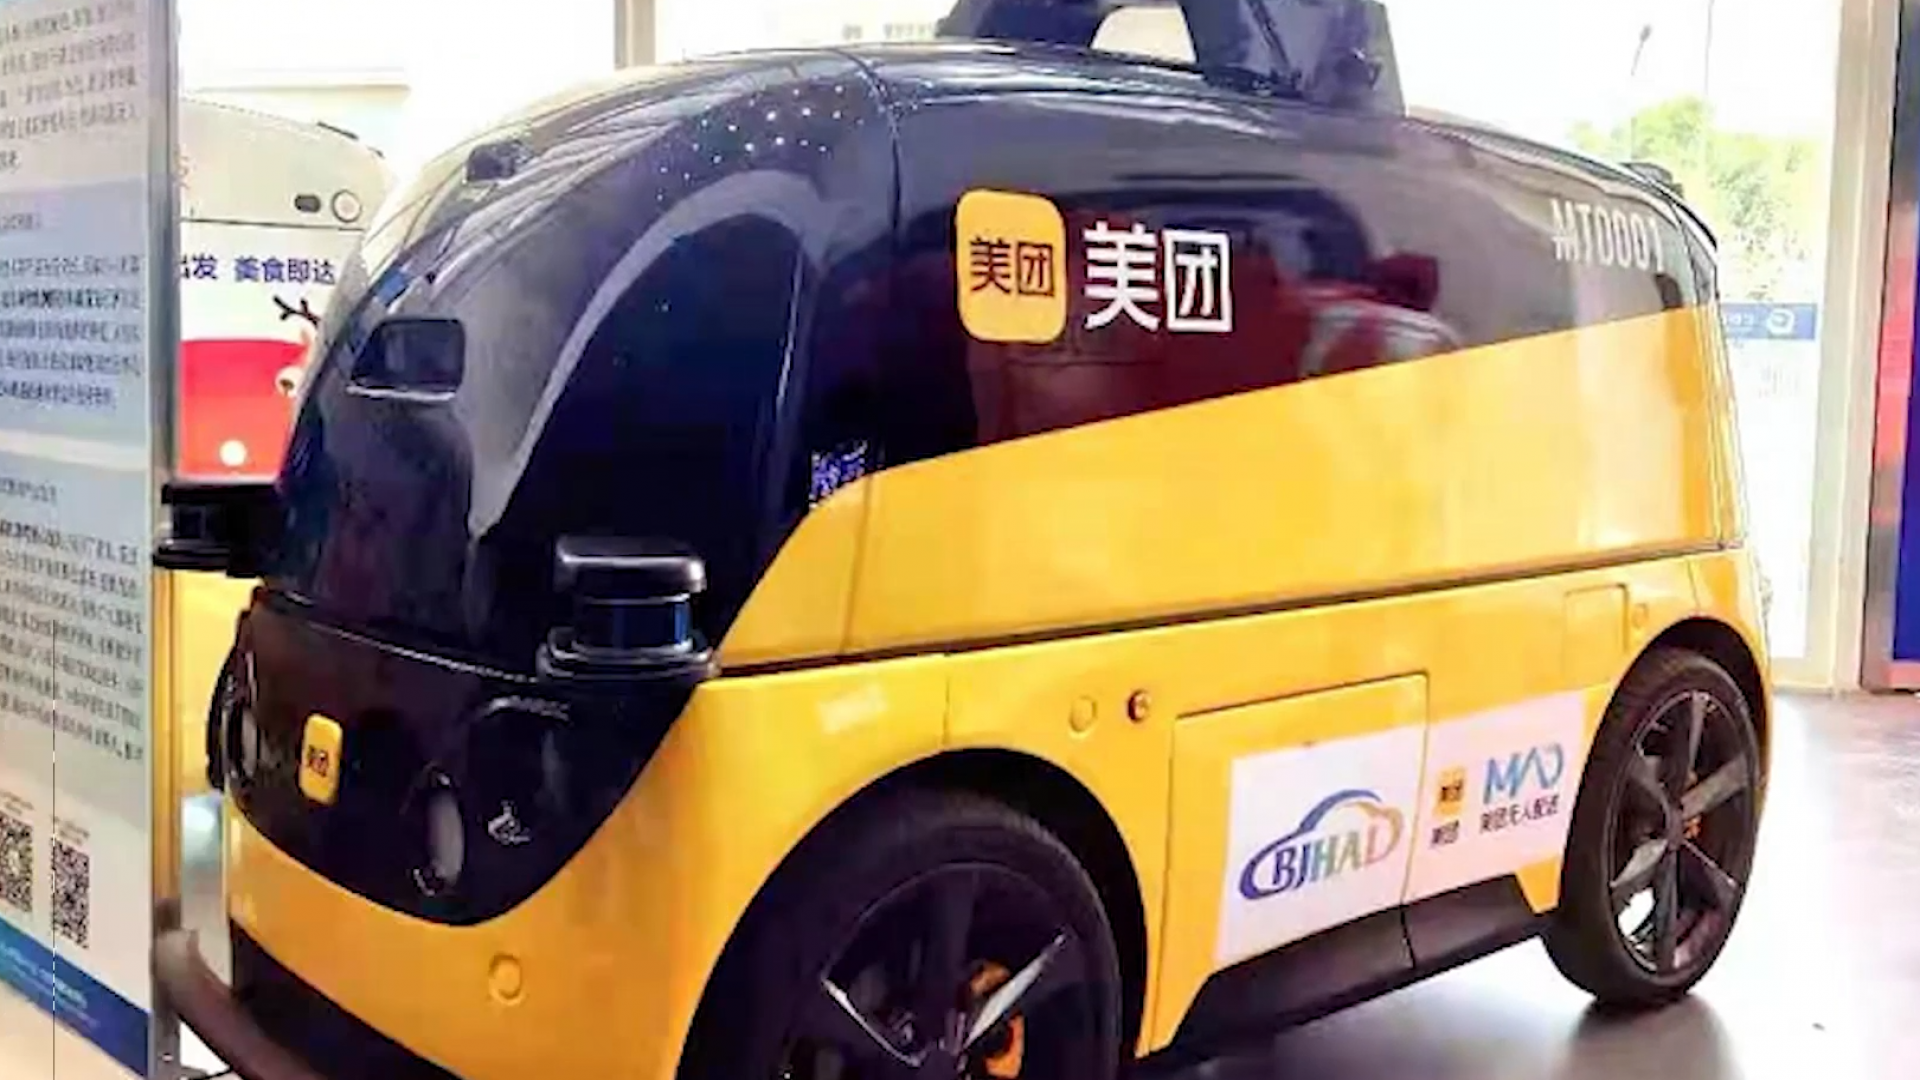 Машина для первого раза. Beijing автомобиль желтый. Машины для первого раза. Китай Пекин какой автомобиль такси.